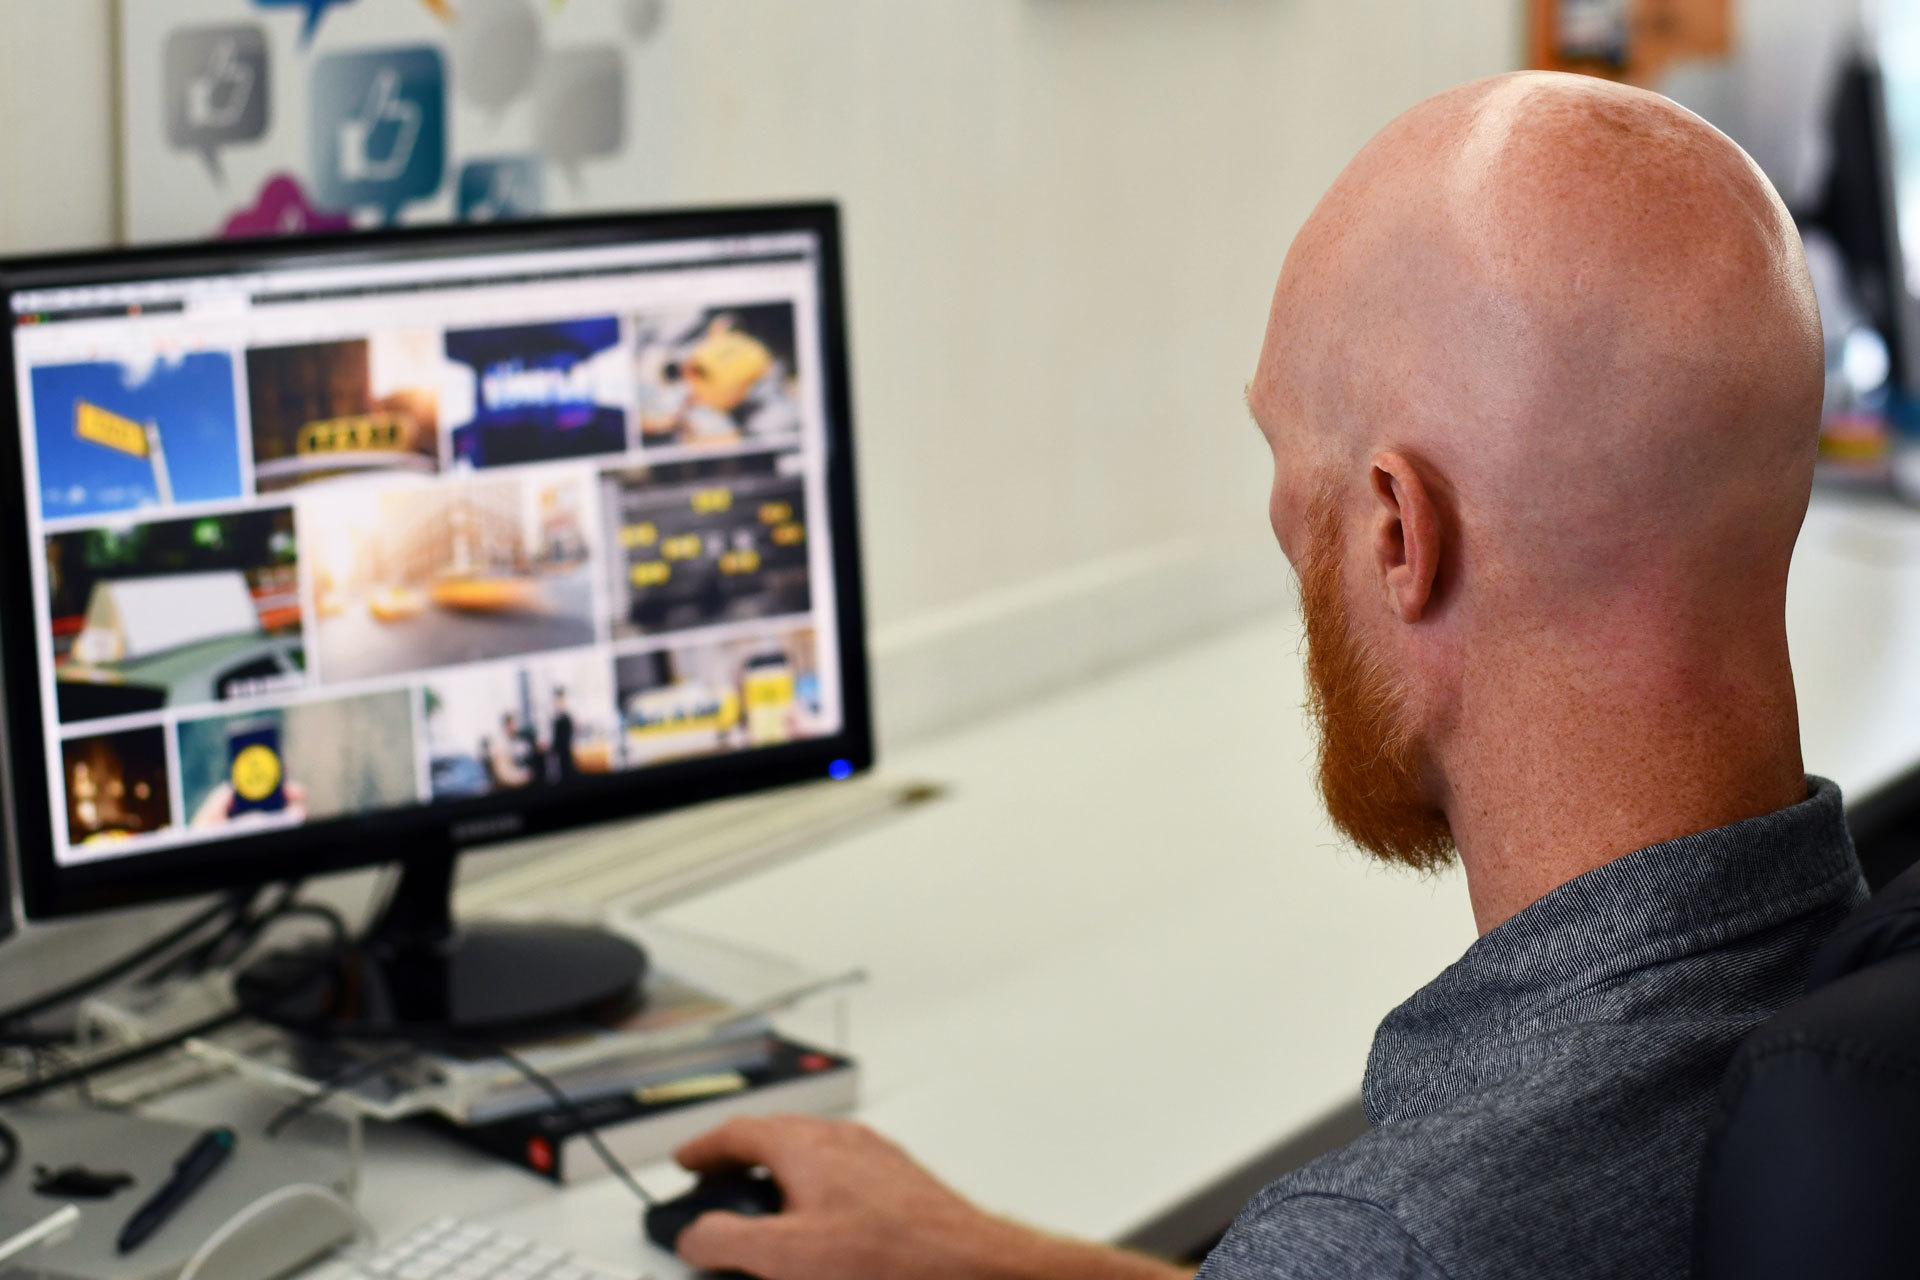 A website designer concentrating on his desktop computer